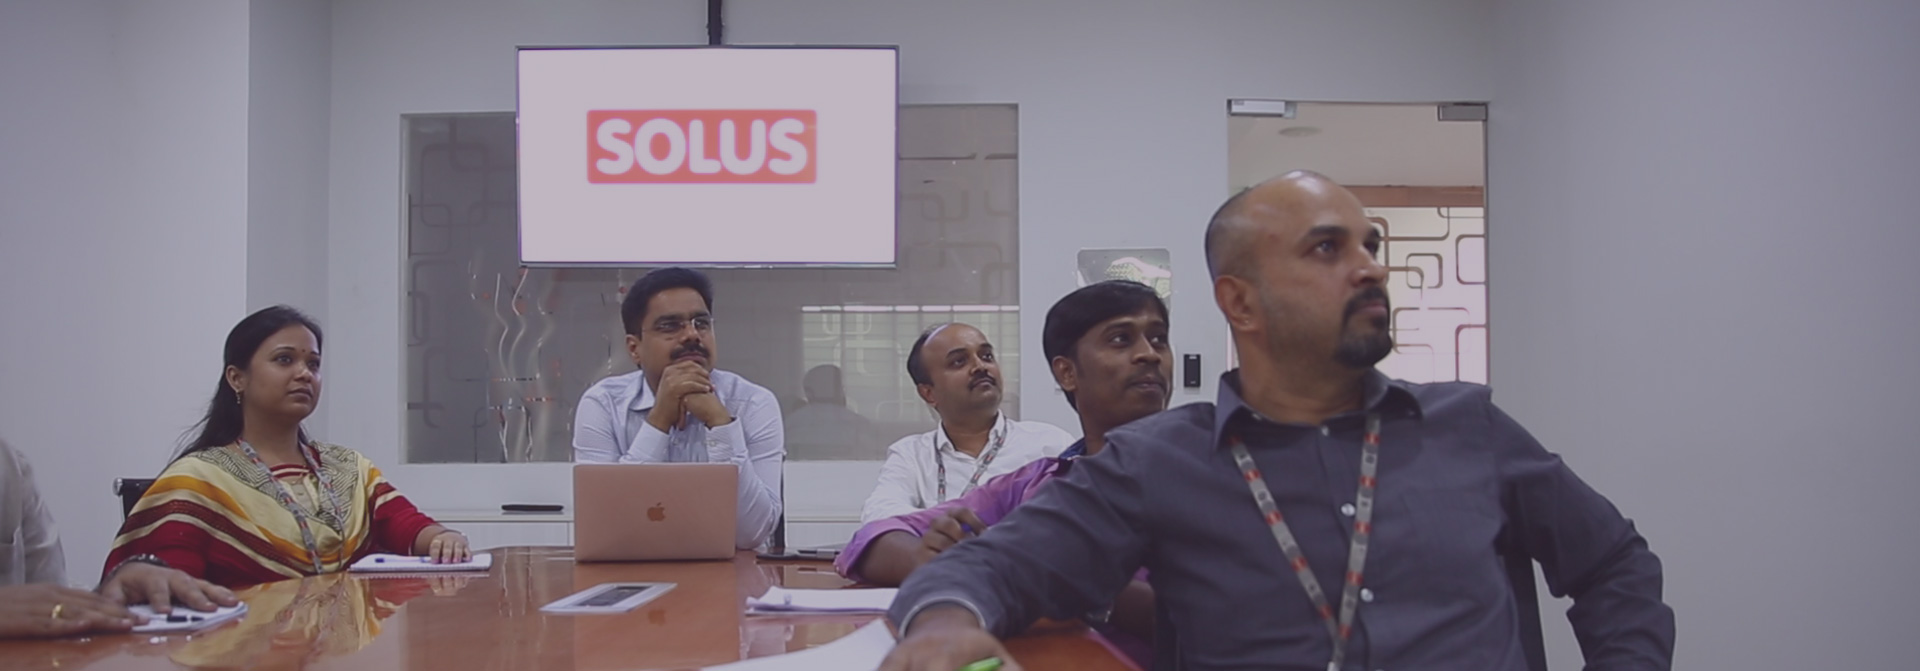 Leaders behind success of SOLUS